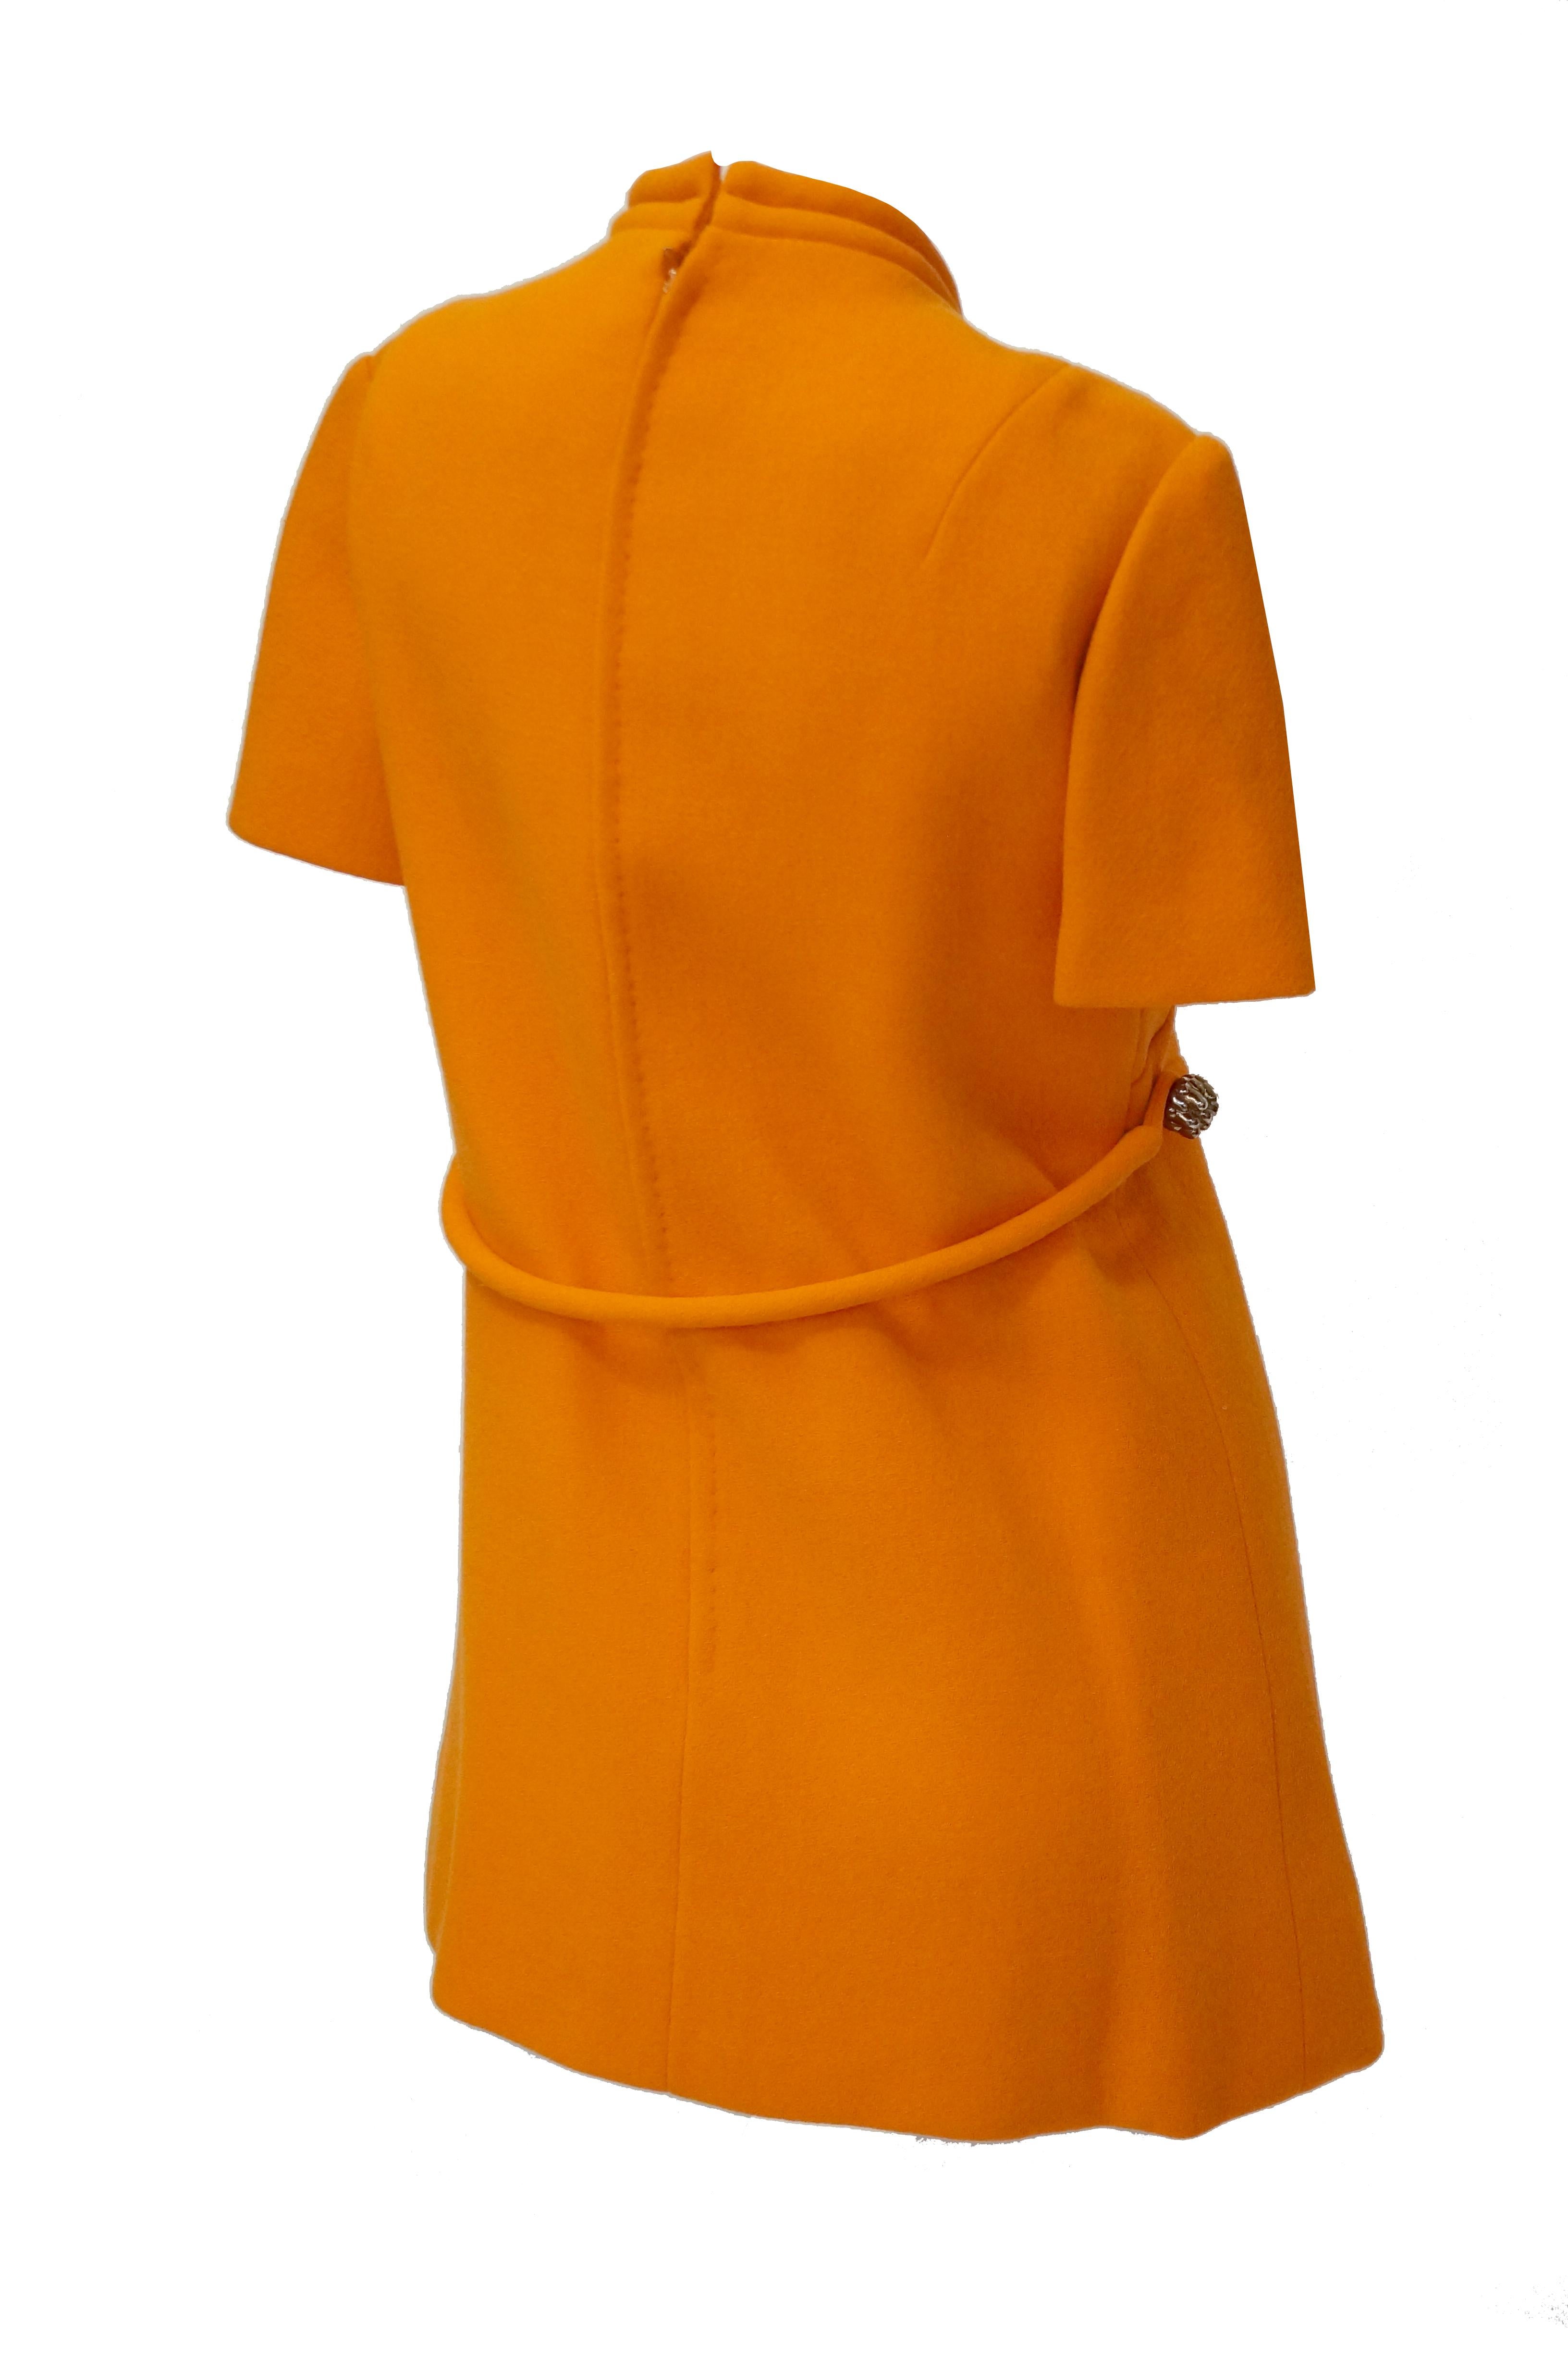 orange mod dress